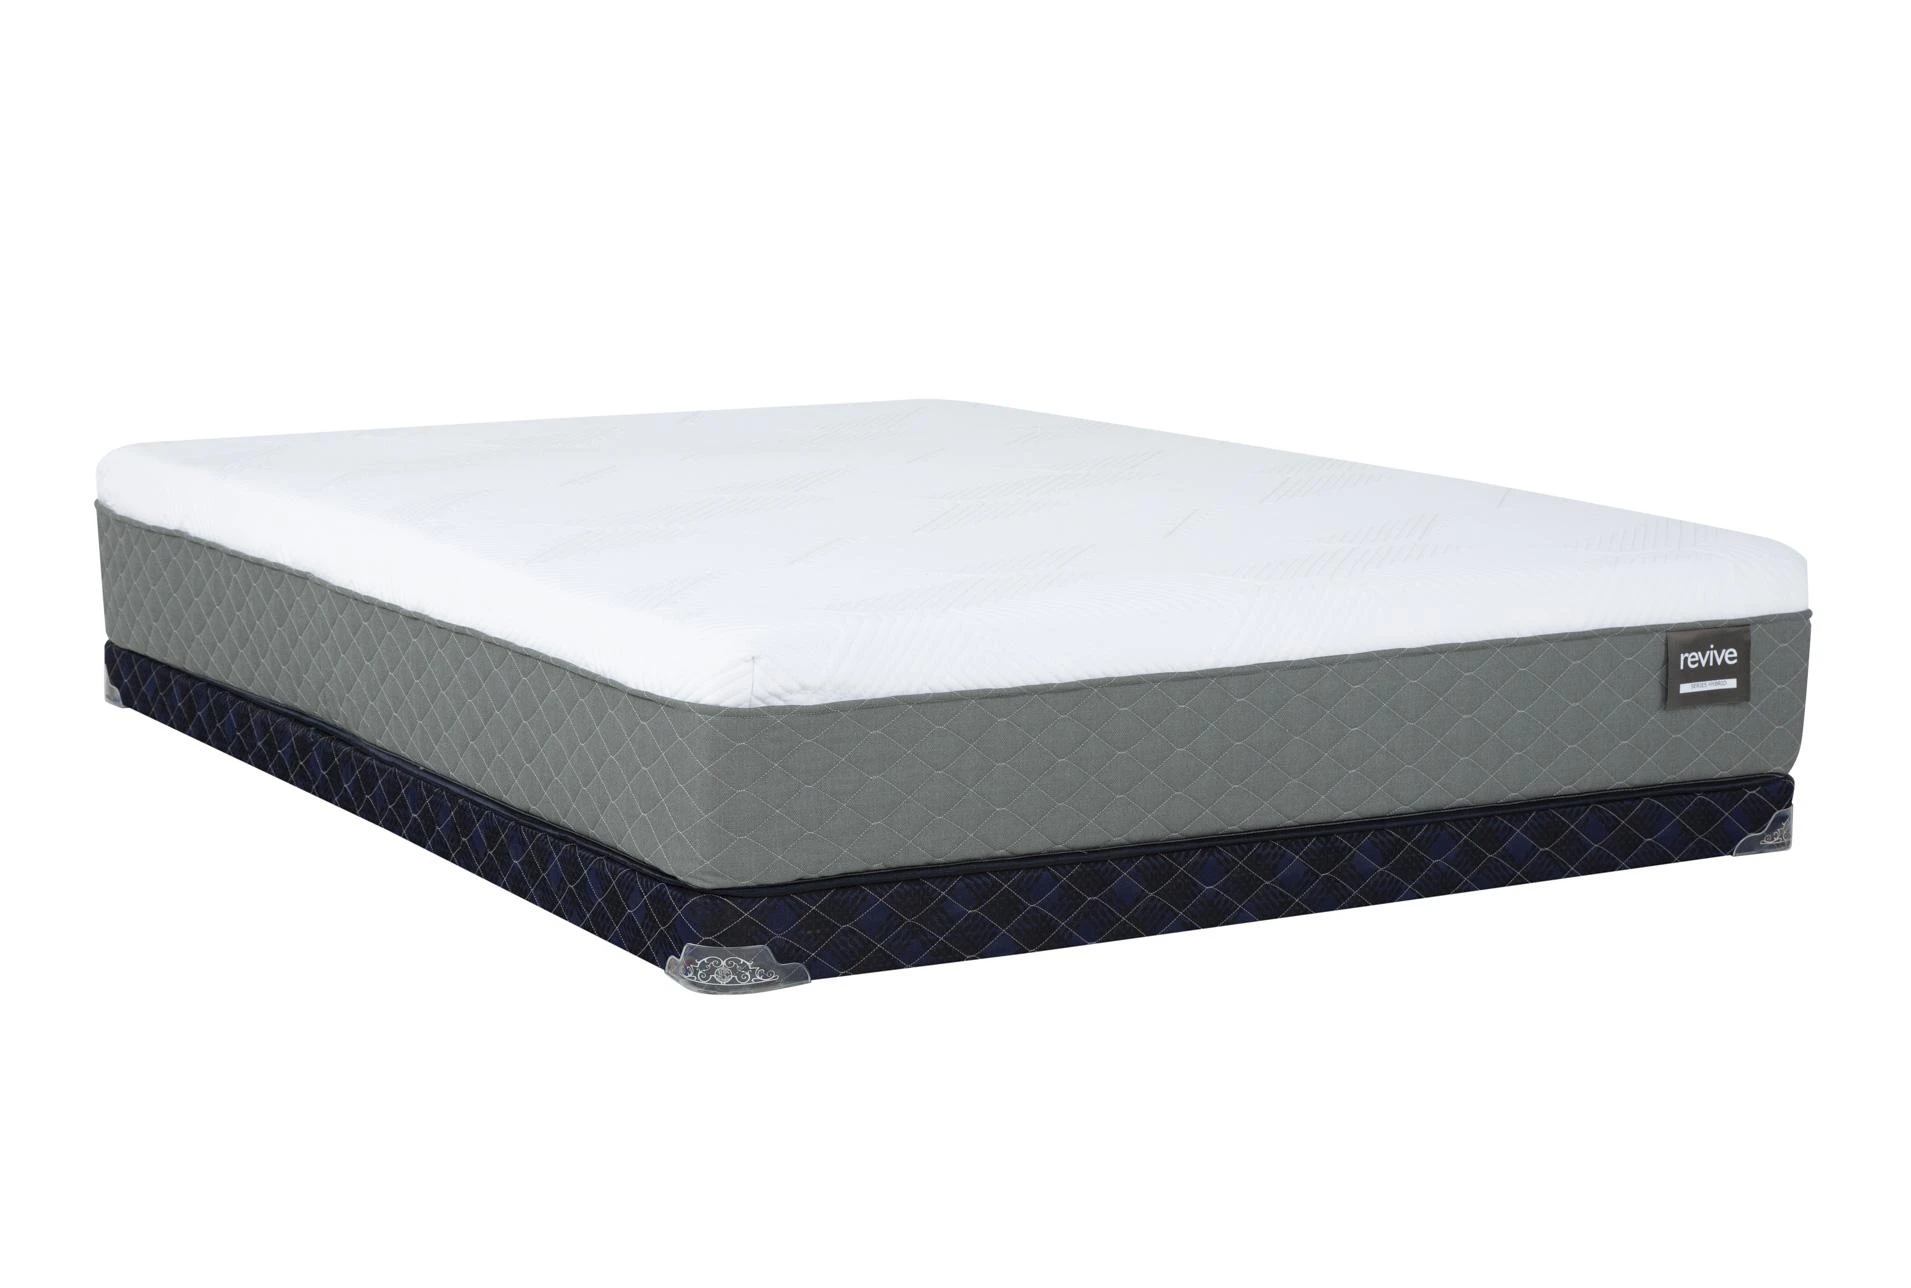 495 revive hybred queen mattress